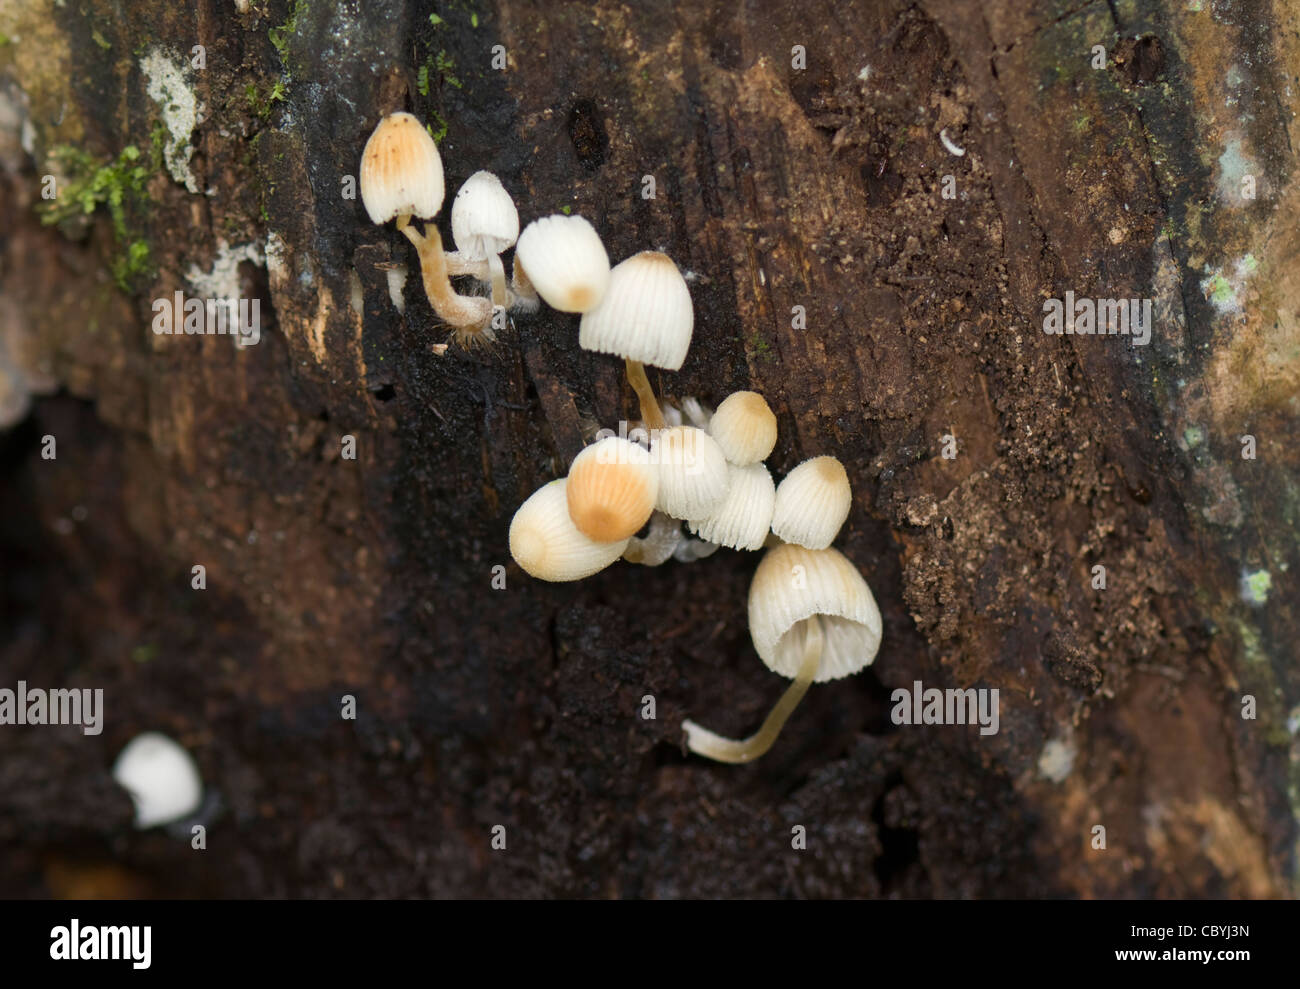 Setas blancas sobre un tronco de árbol provincia de Puntarenas Costa Rica Foto de stock